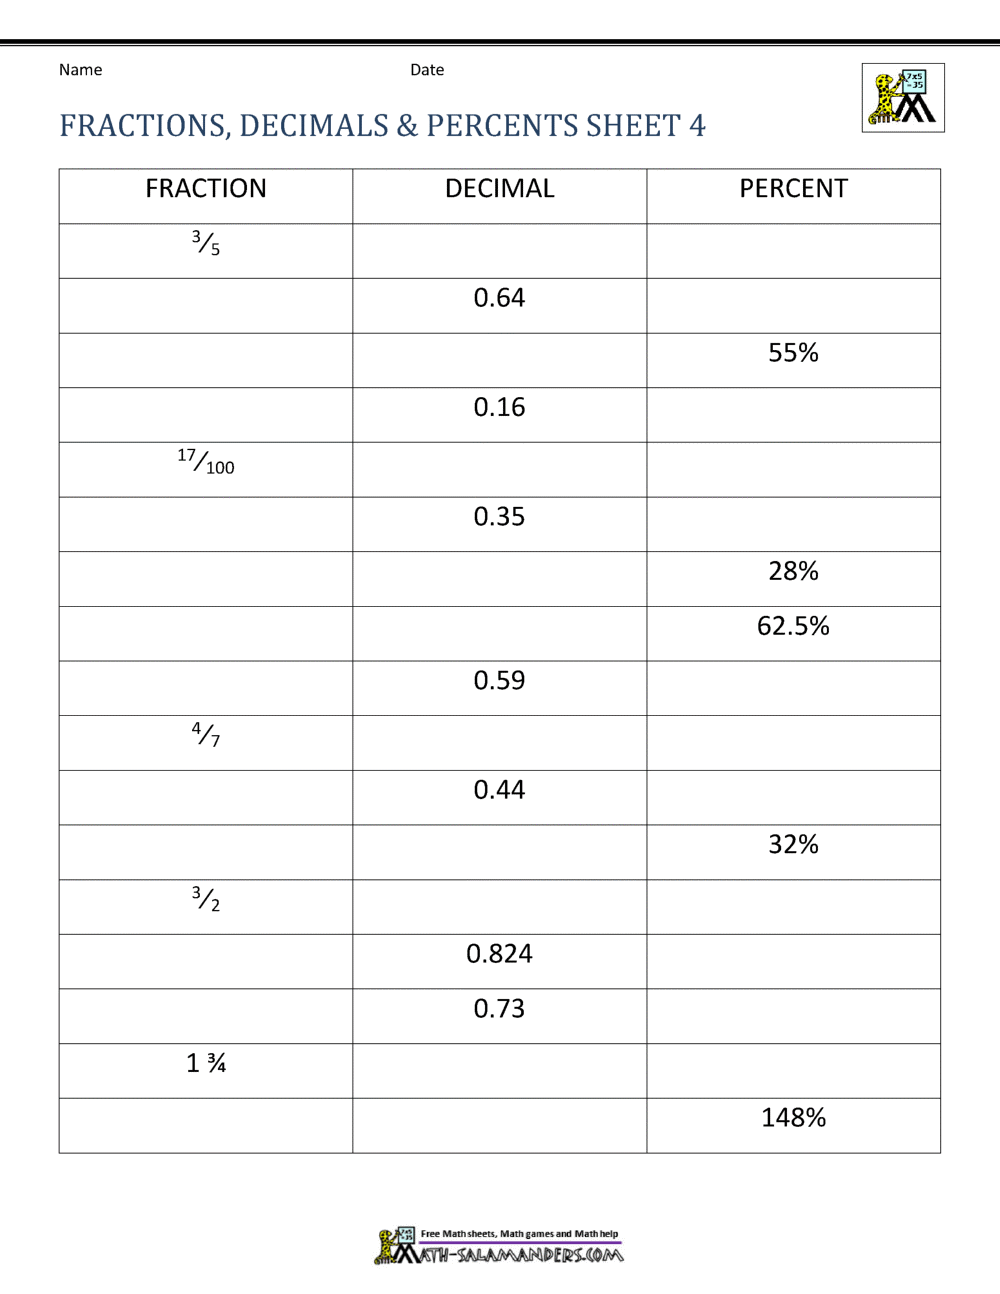 Fractions Decimals Percents Worksheets Throughout Fraction Decimal Percent Worksheet Pdf